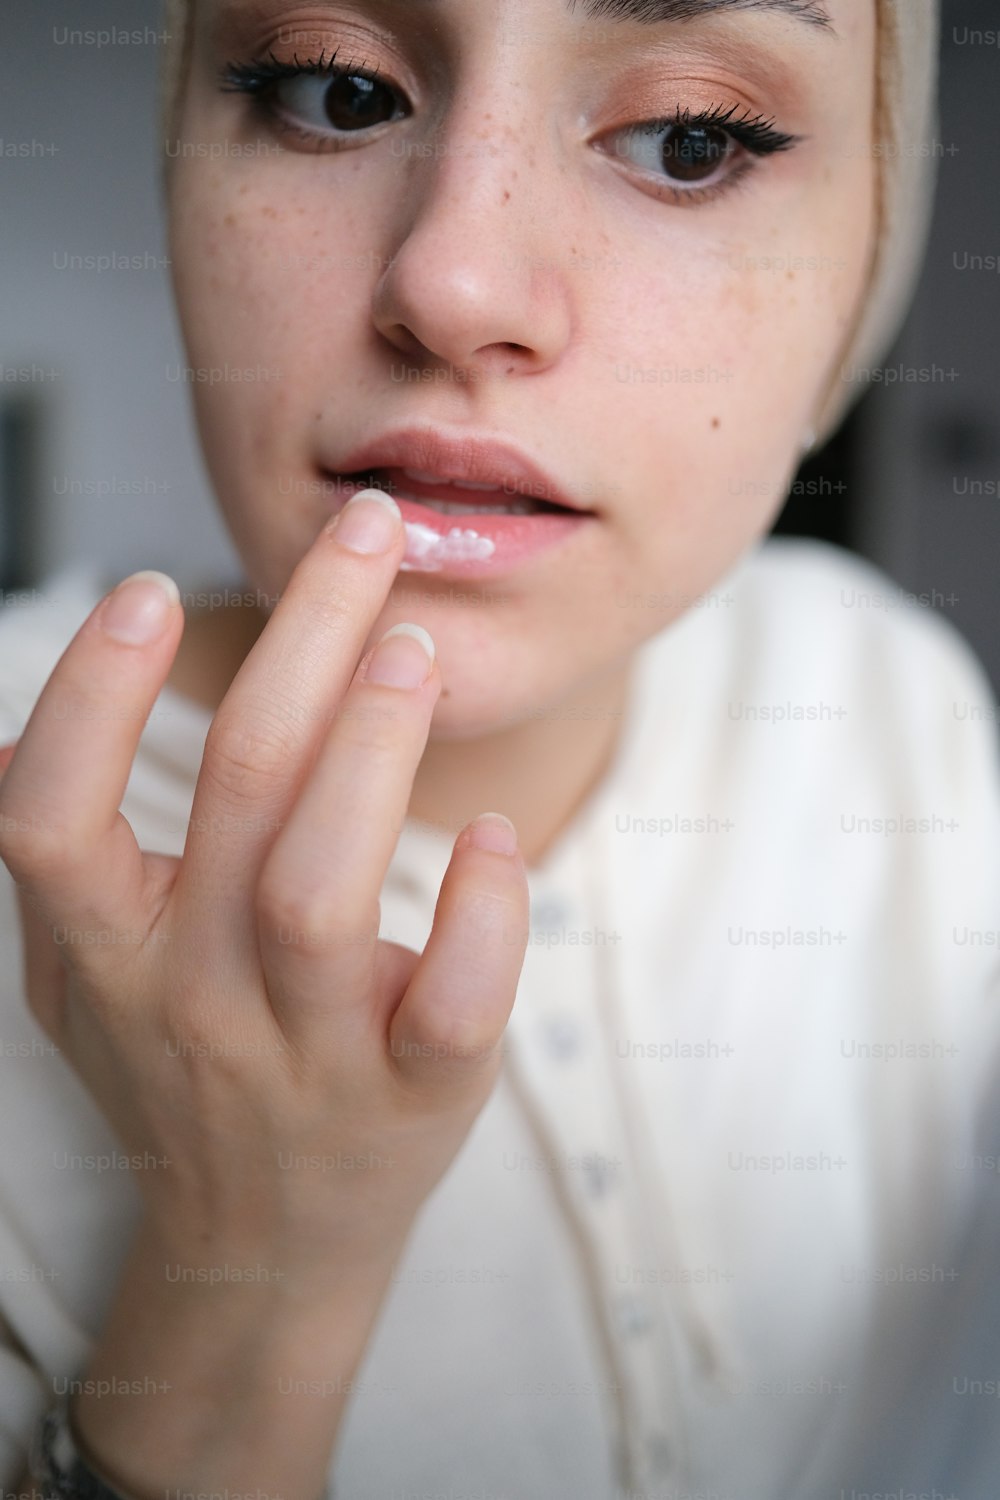 Un primer plano de una persona con un anillo en el dedo